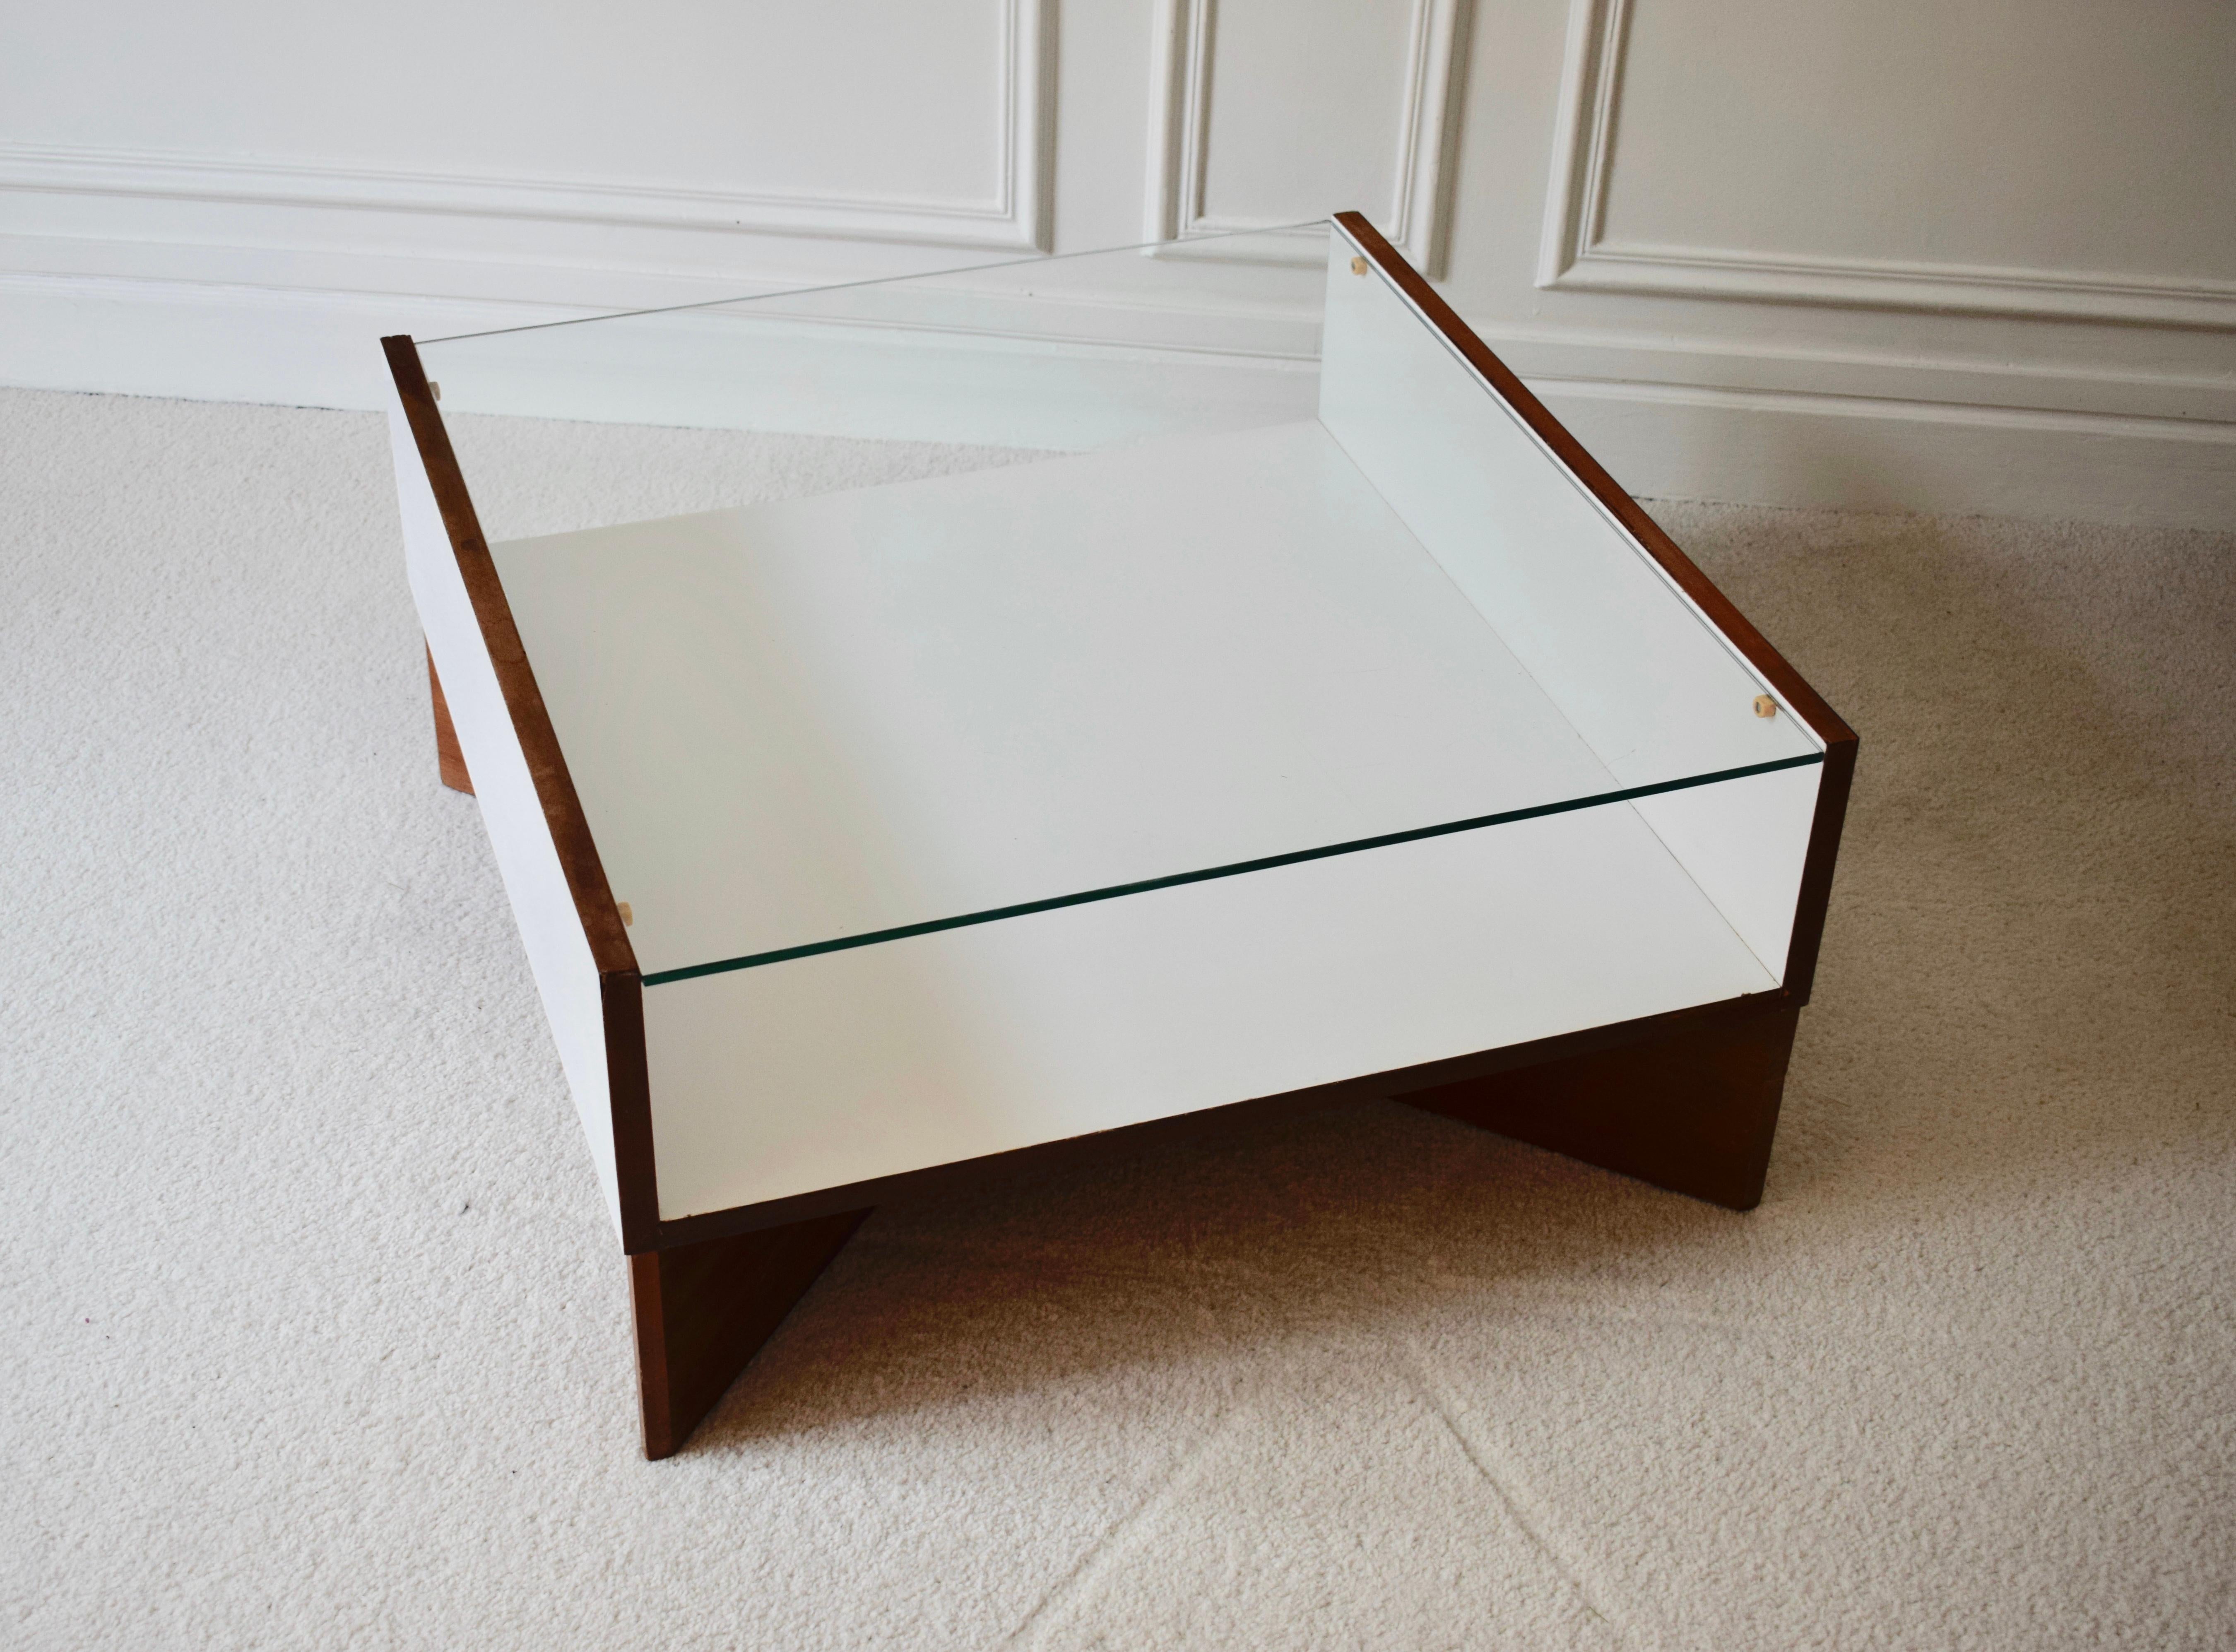 Pierre Guariche
Aquilon Low Table, 1960
Formica, teak, glass
13.78 H x 27.56 x 27.56 inches
35 H x 70 x 70 cm
Edition Les Huchers-Minvielle